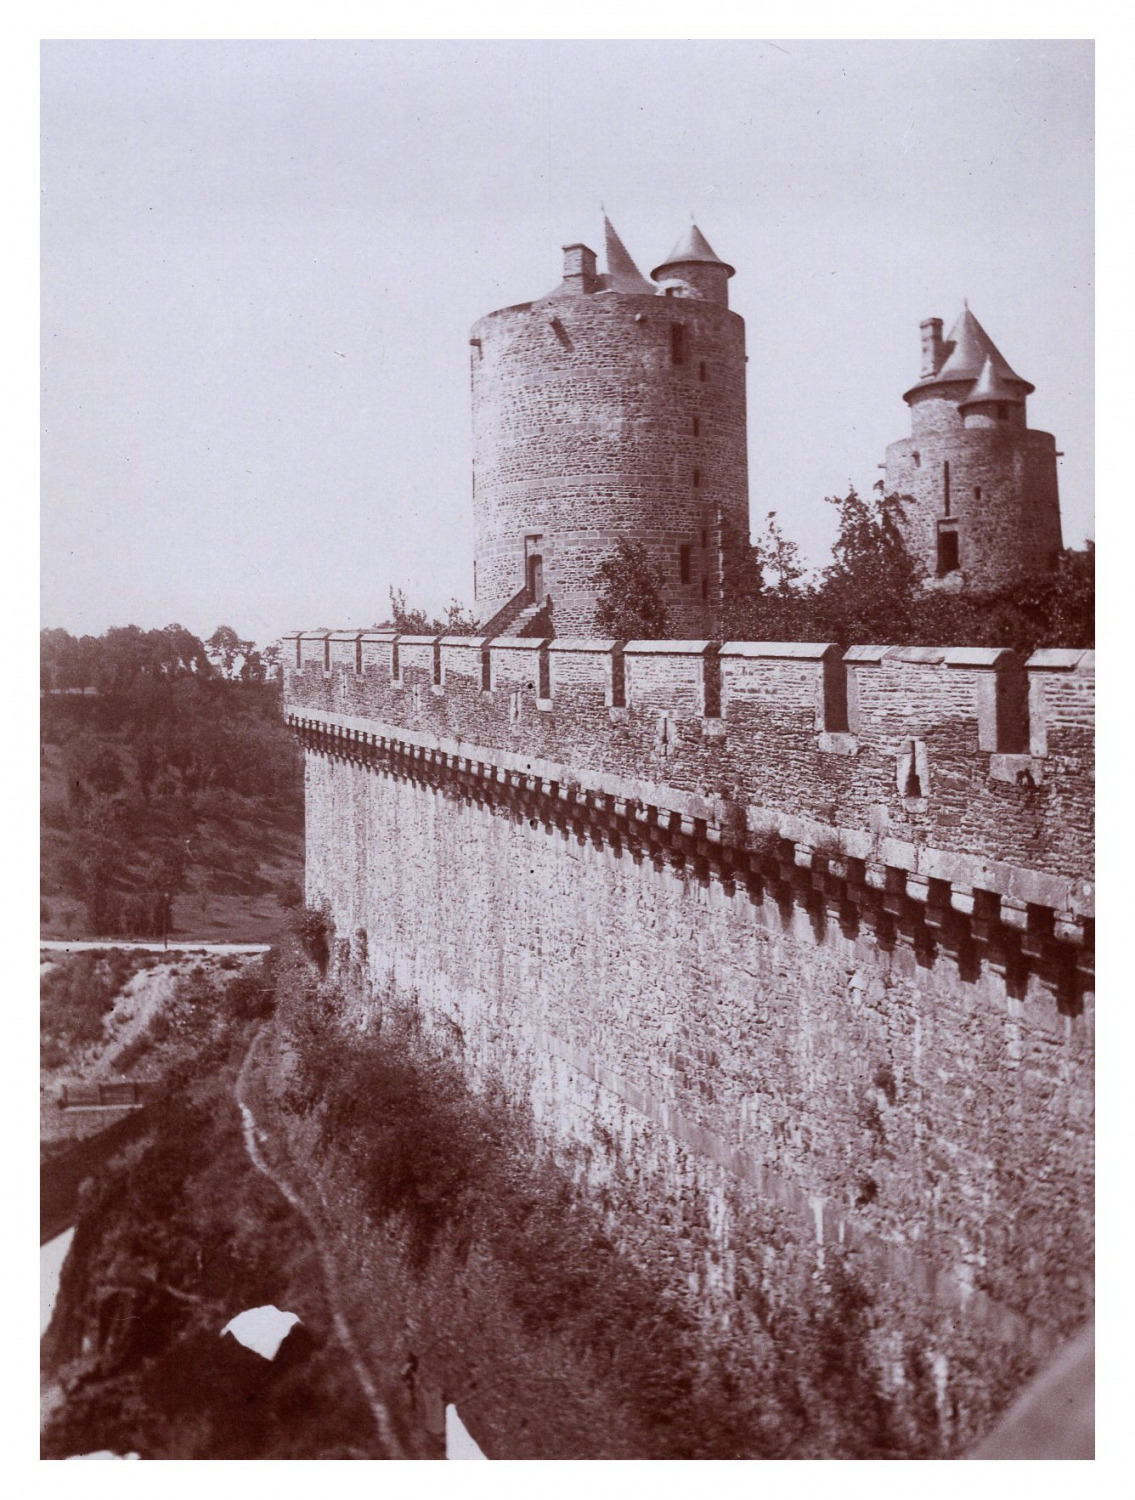 France, Fougères, Château de Fougères, vintage print, circa 1900 vintage print 